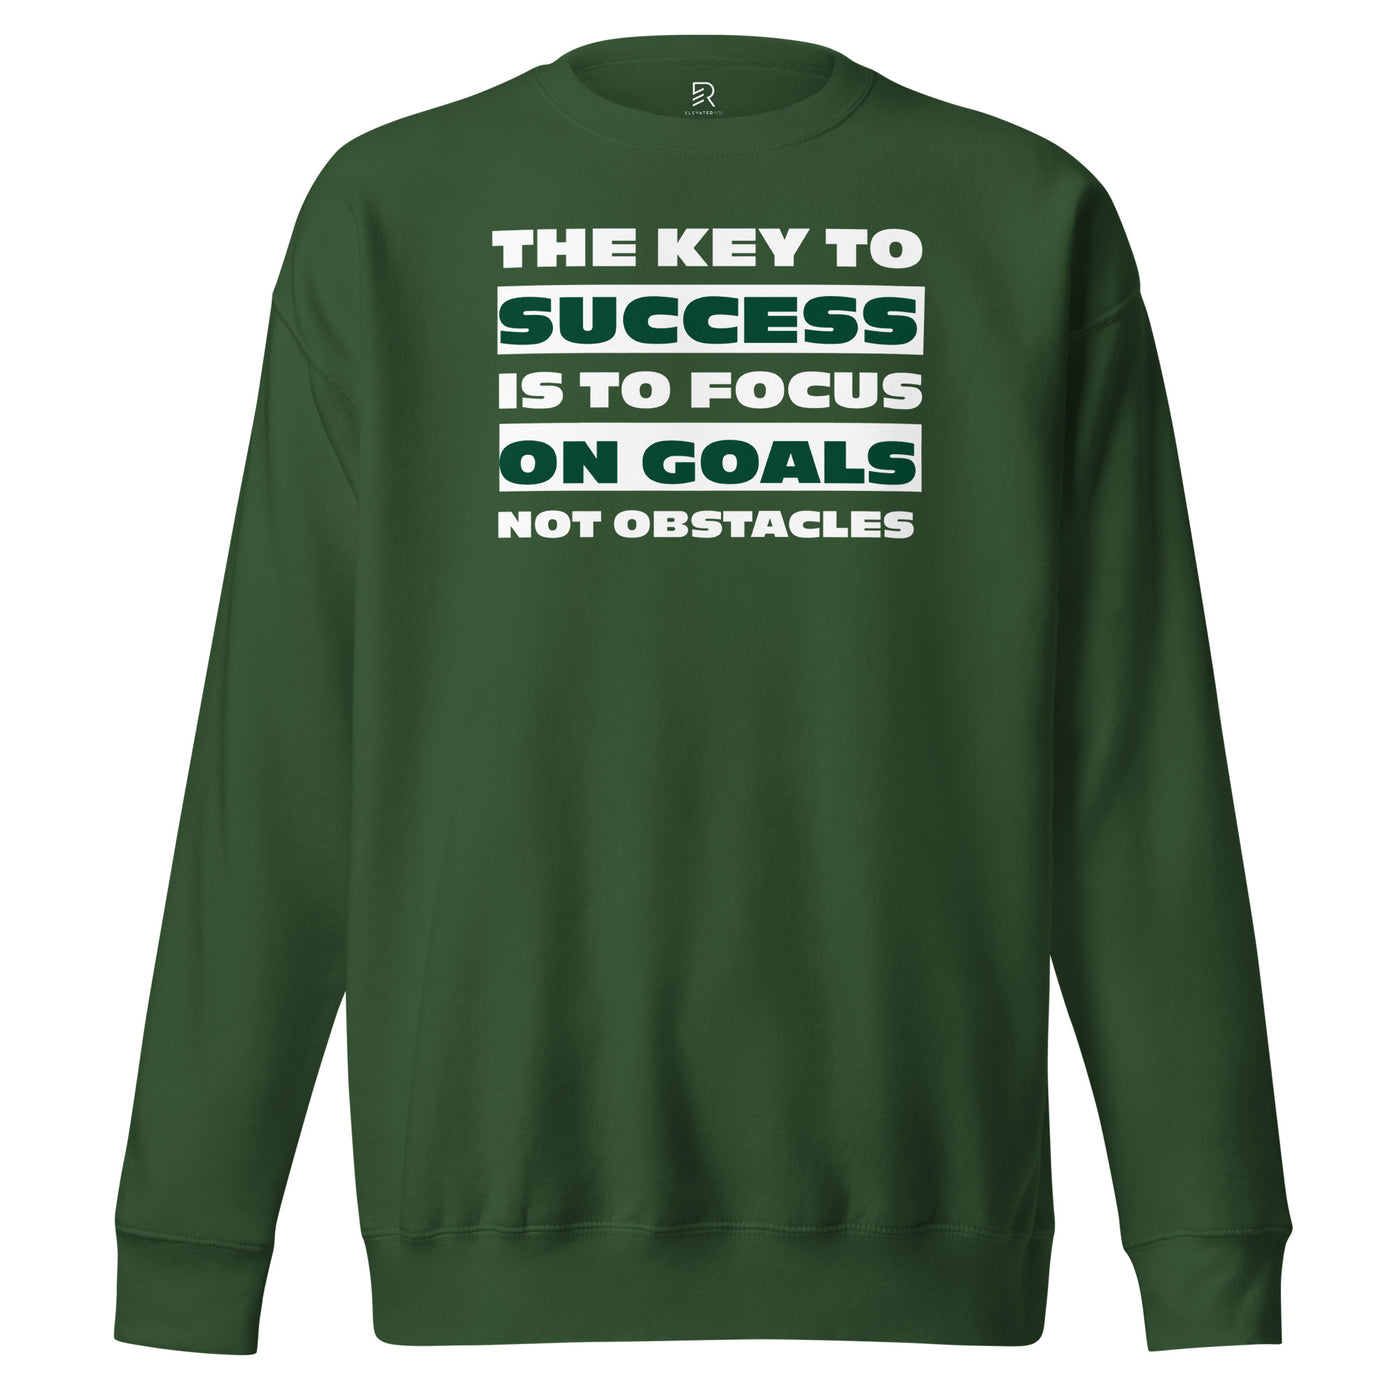 Women's Premium Green Sweatshirt - Focus on Goals